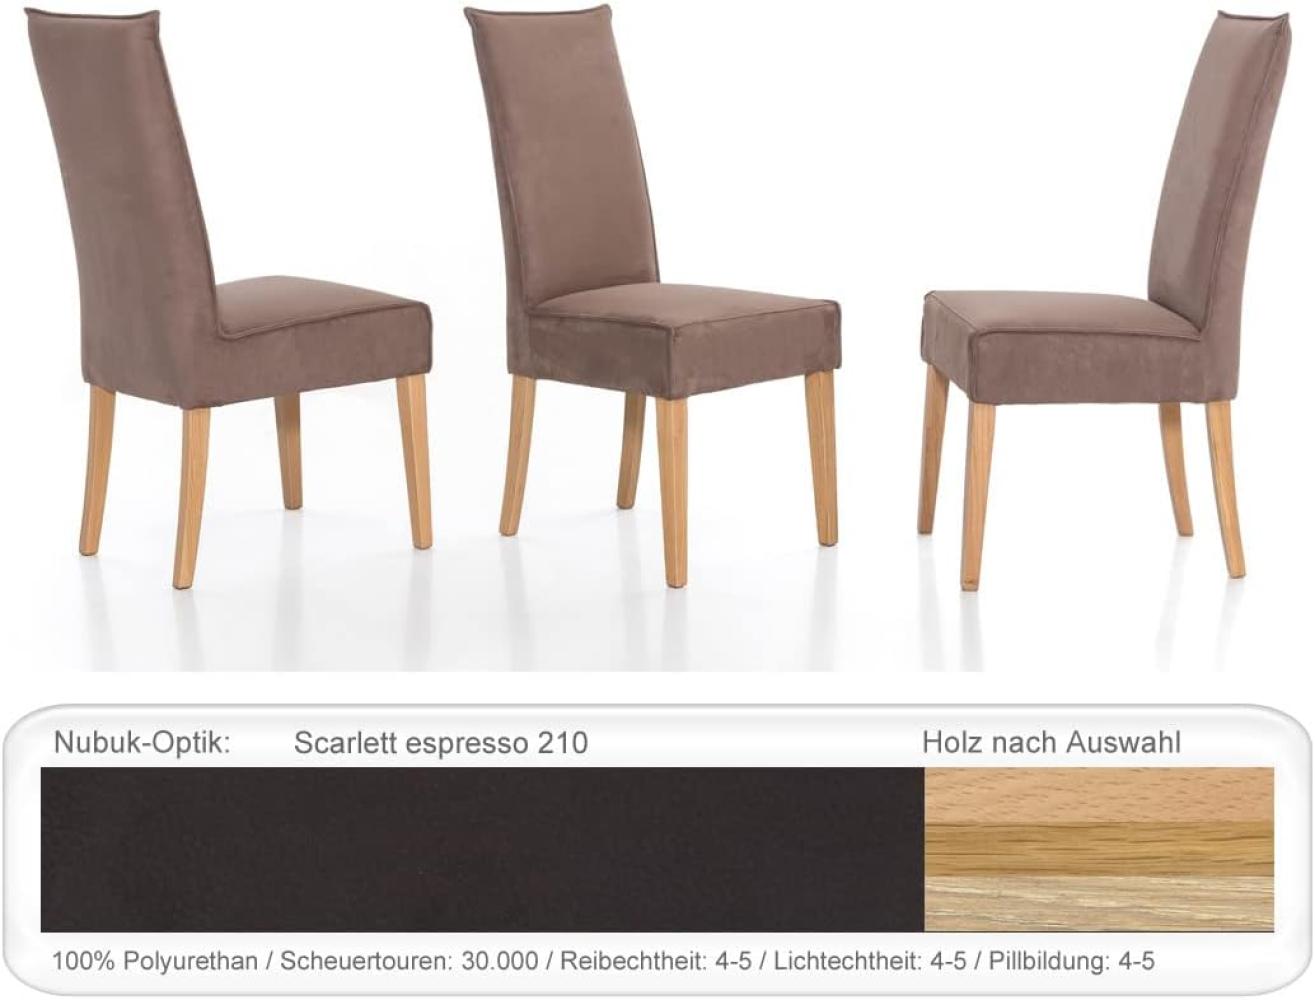 4x Polsterstuhl Kiana Varianten Esszimmerstuhl Küchenstuhl Massivholzstuhl Eiche natur lackiert, Scarlett espresso Bild 1